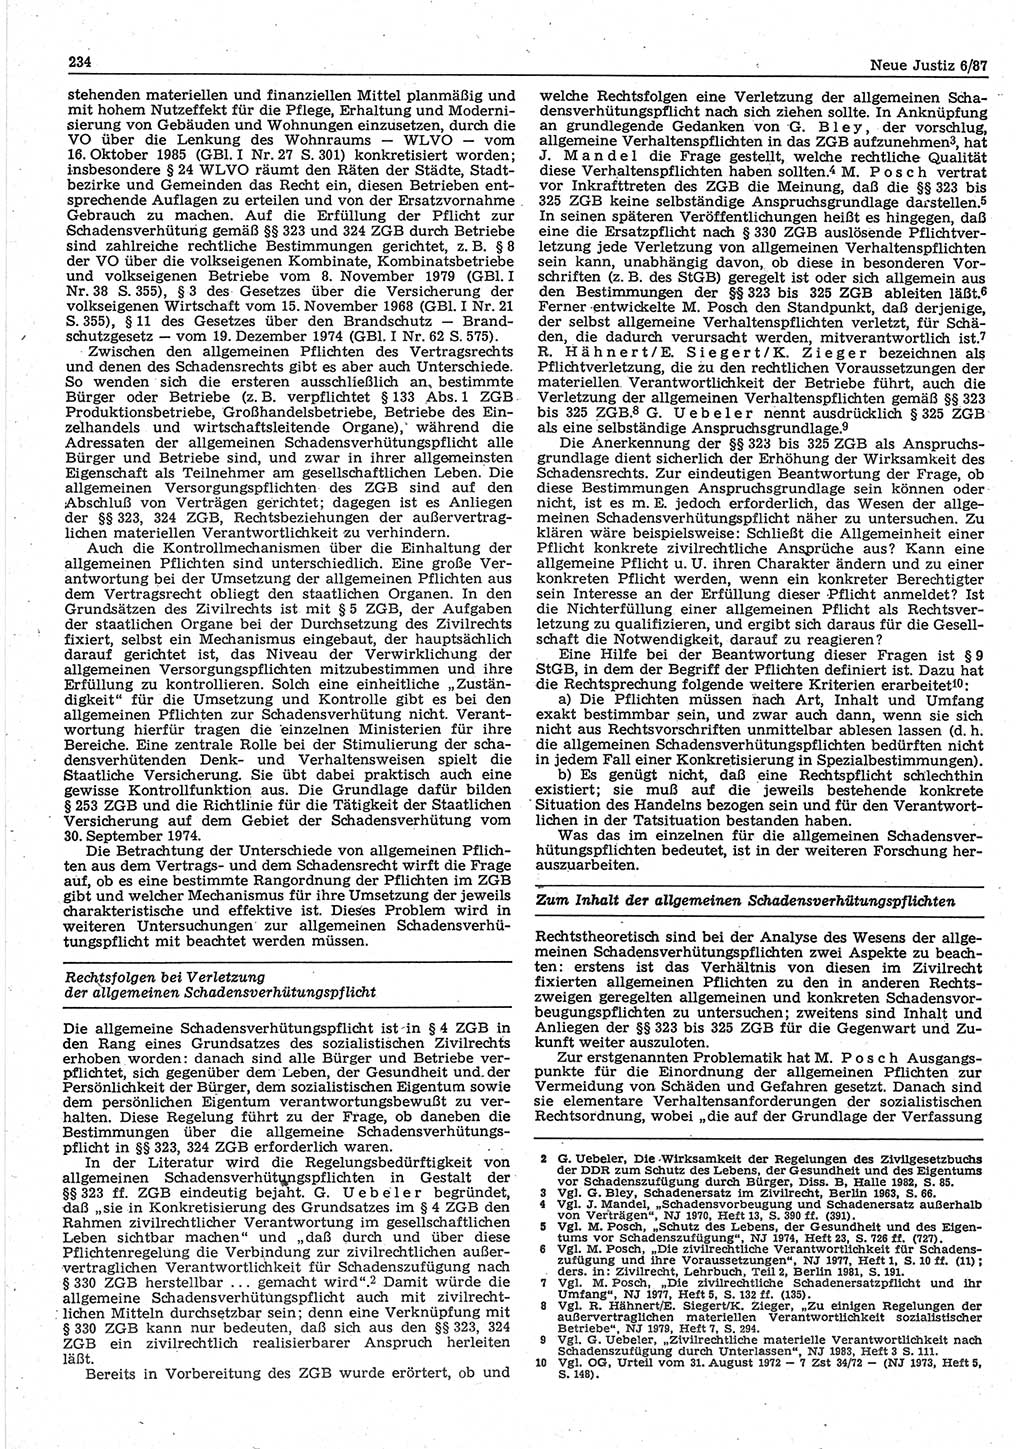 Neue Justiz (NJ), Zeitschrift für sozialistisches Recht und Gesetzlichkeit [Deutsche Demokratische Republik (DDR)], 41. Jahrgang 1987, Seite 234 (NJ DDR 1987, S. 234)